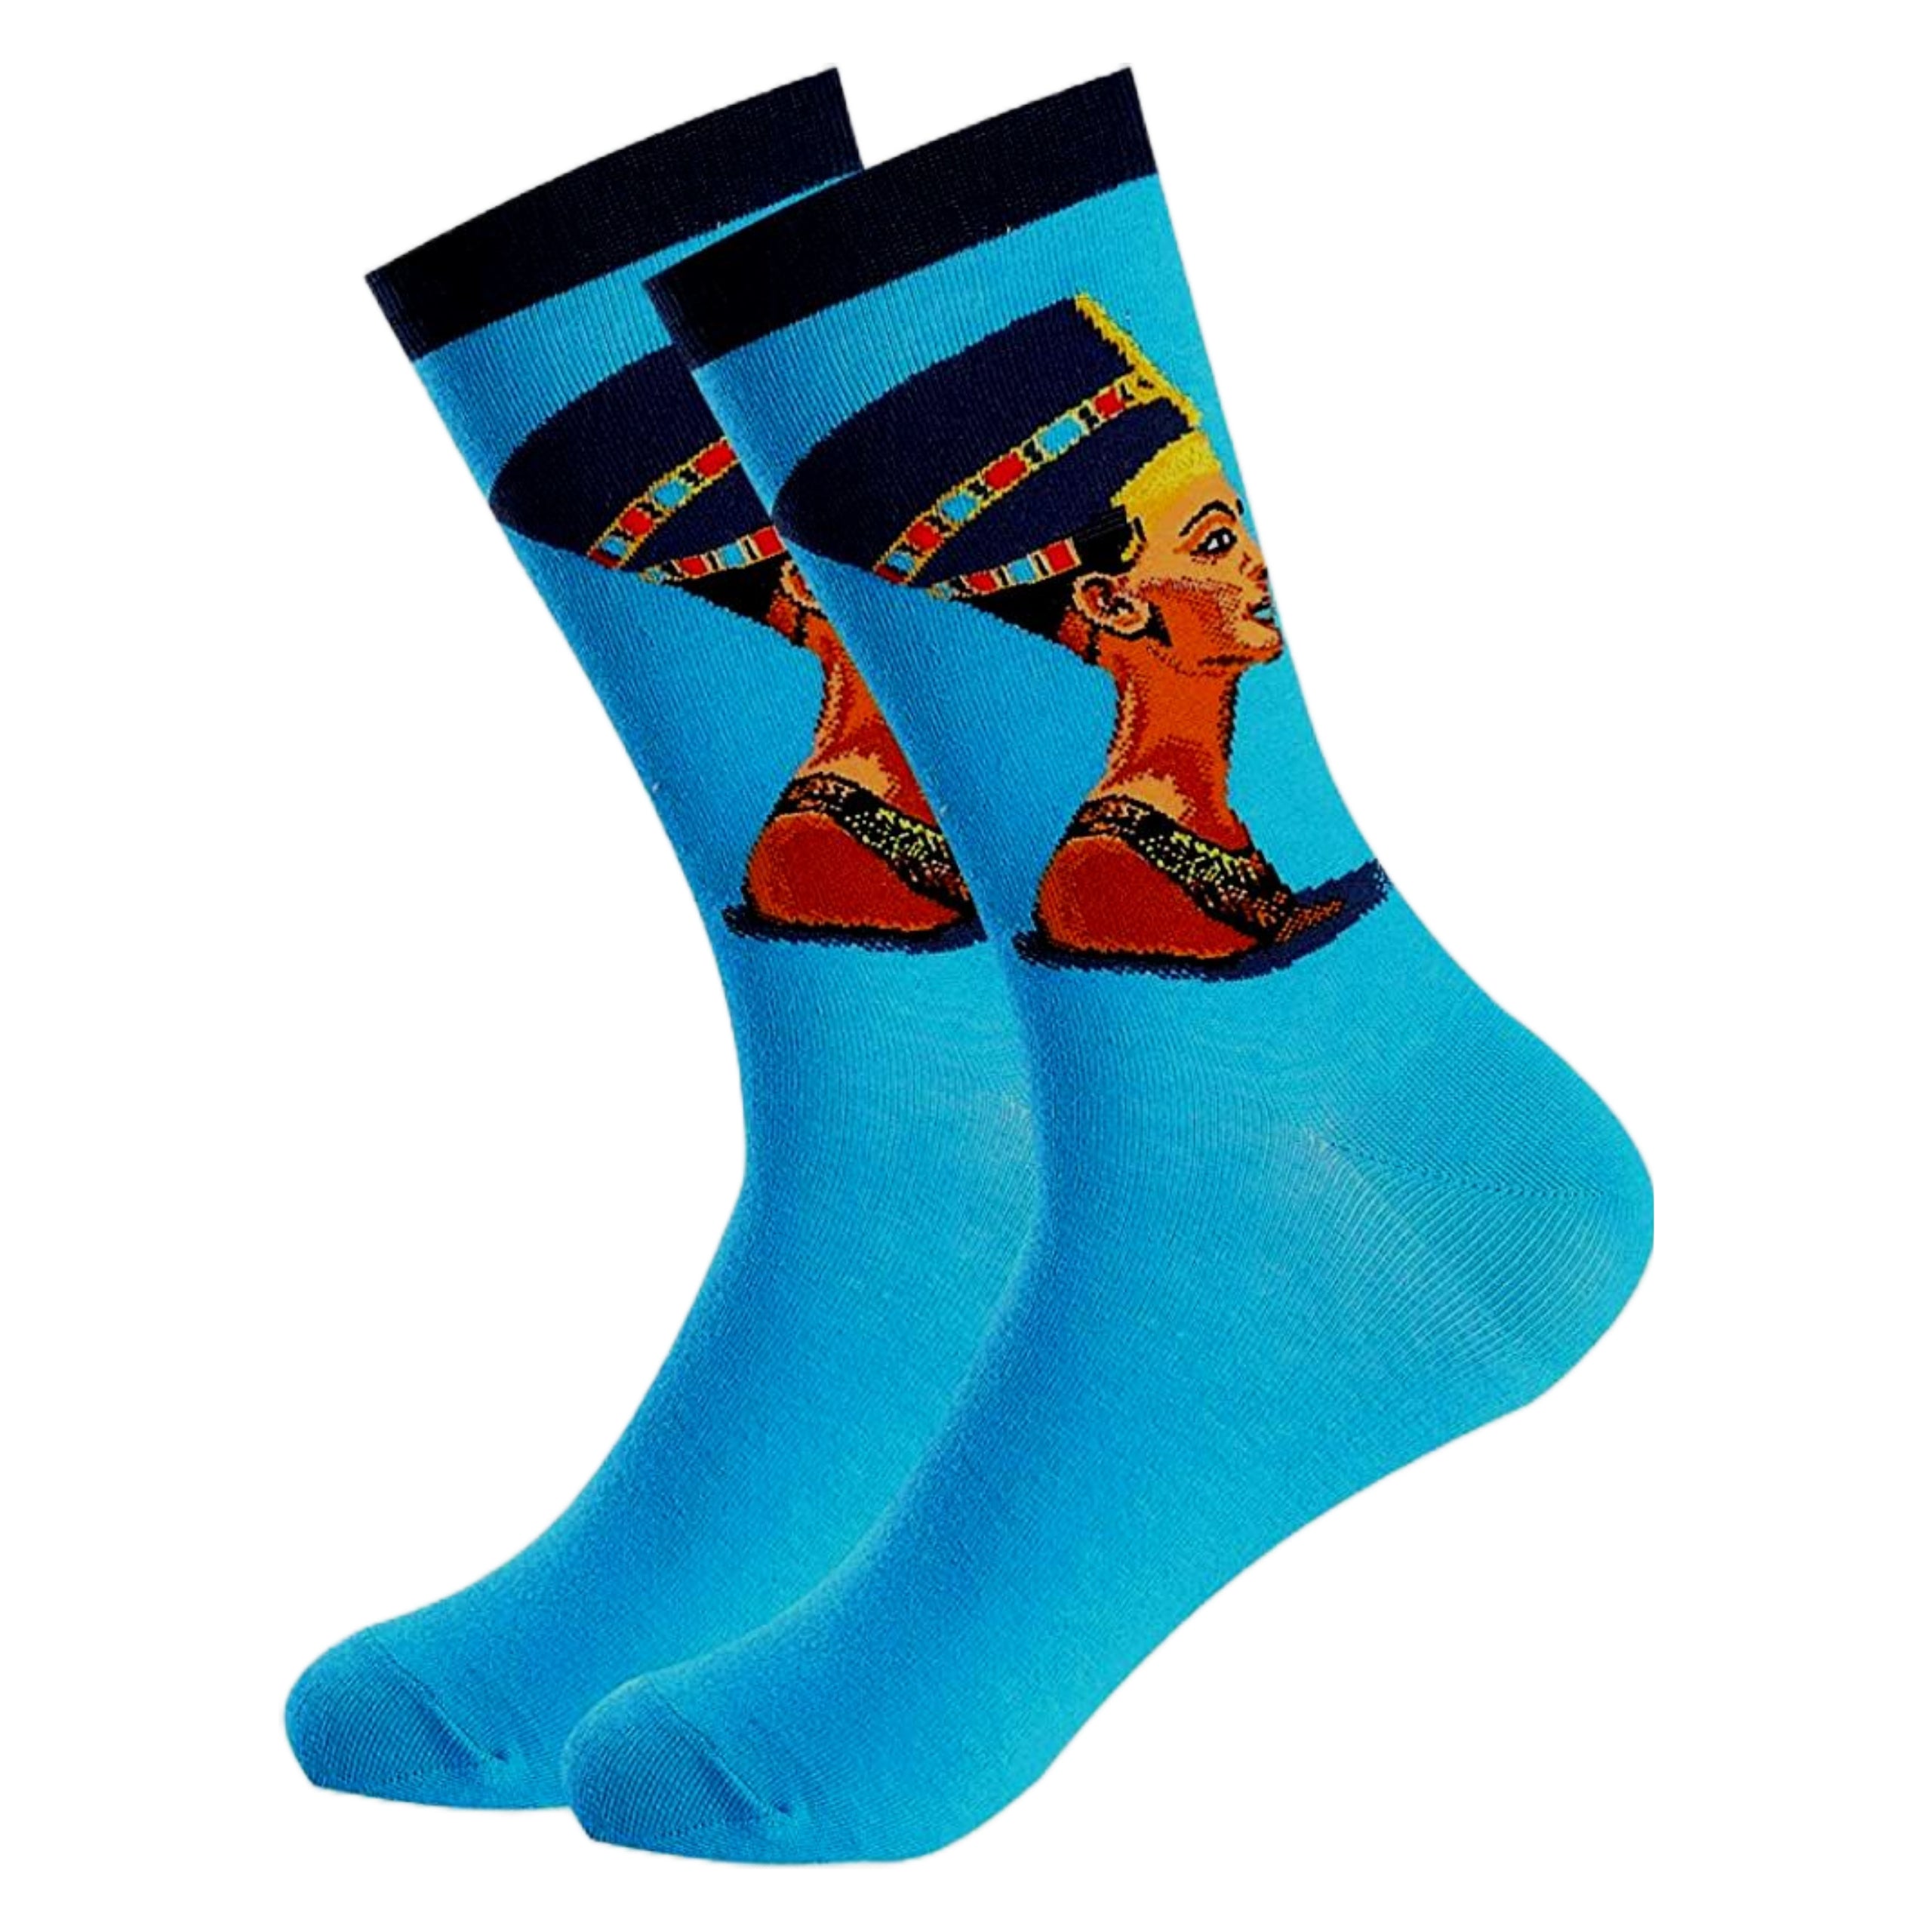 Nefertiti Famous Art Socks from the Sock Panda